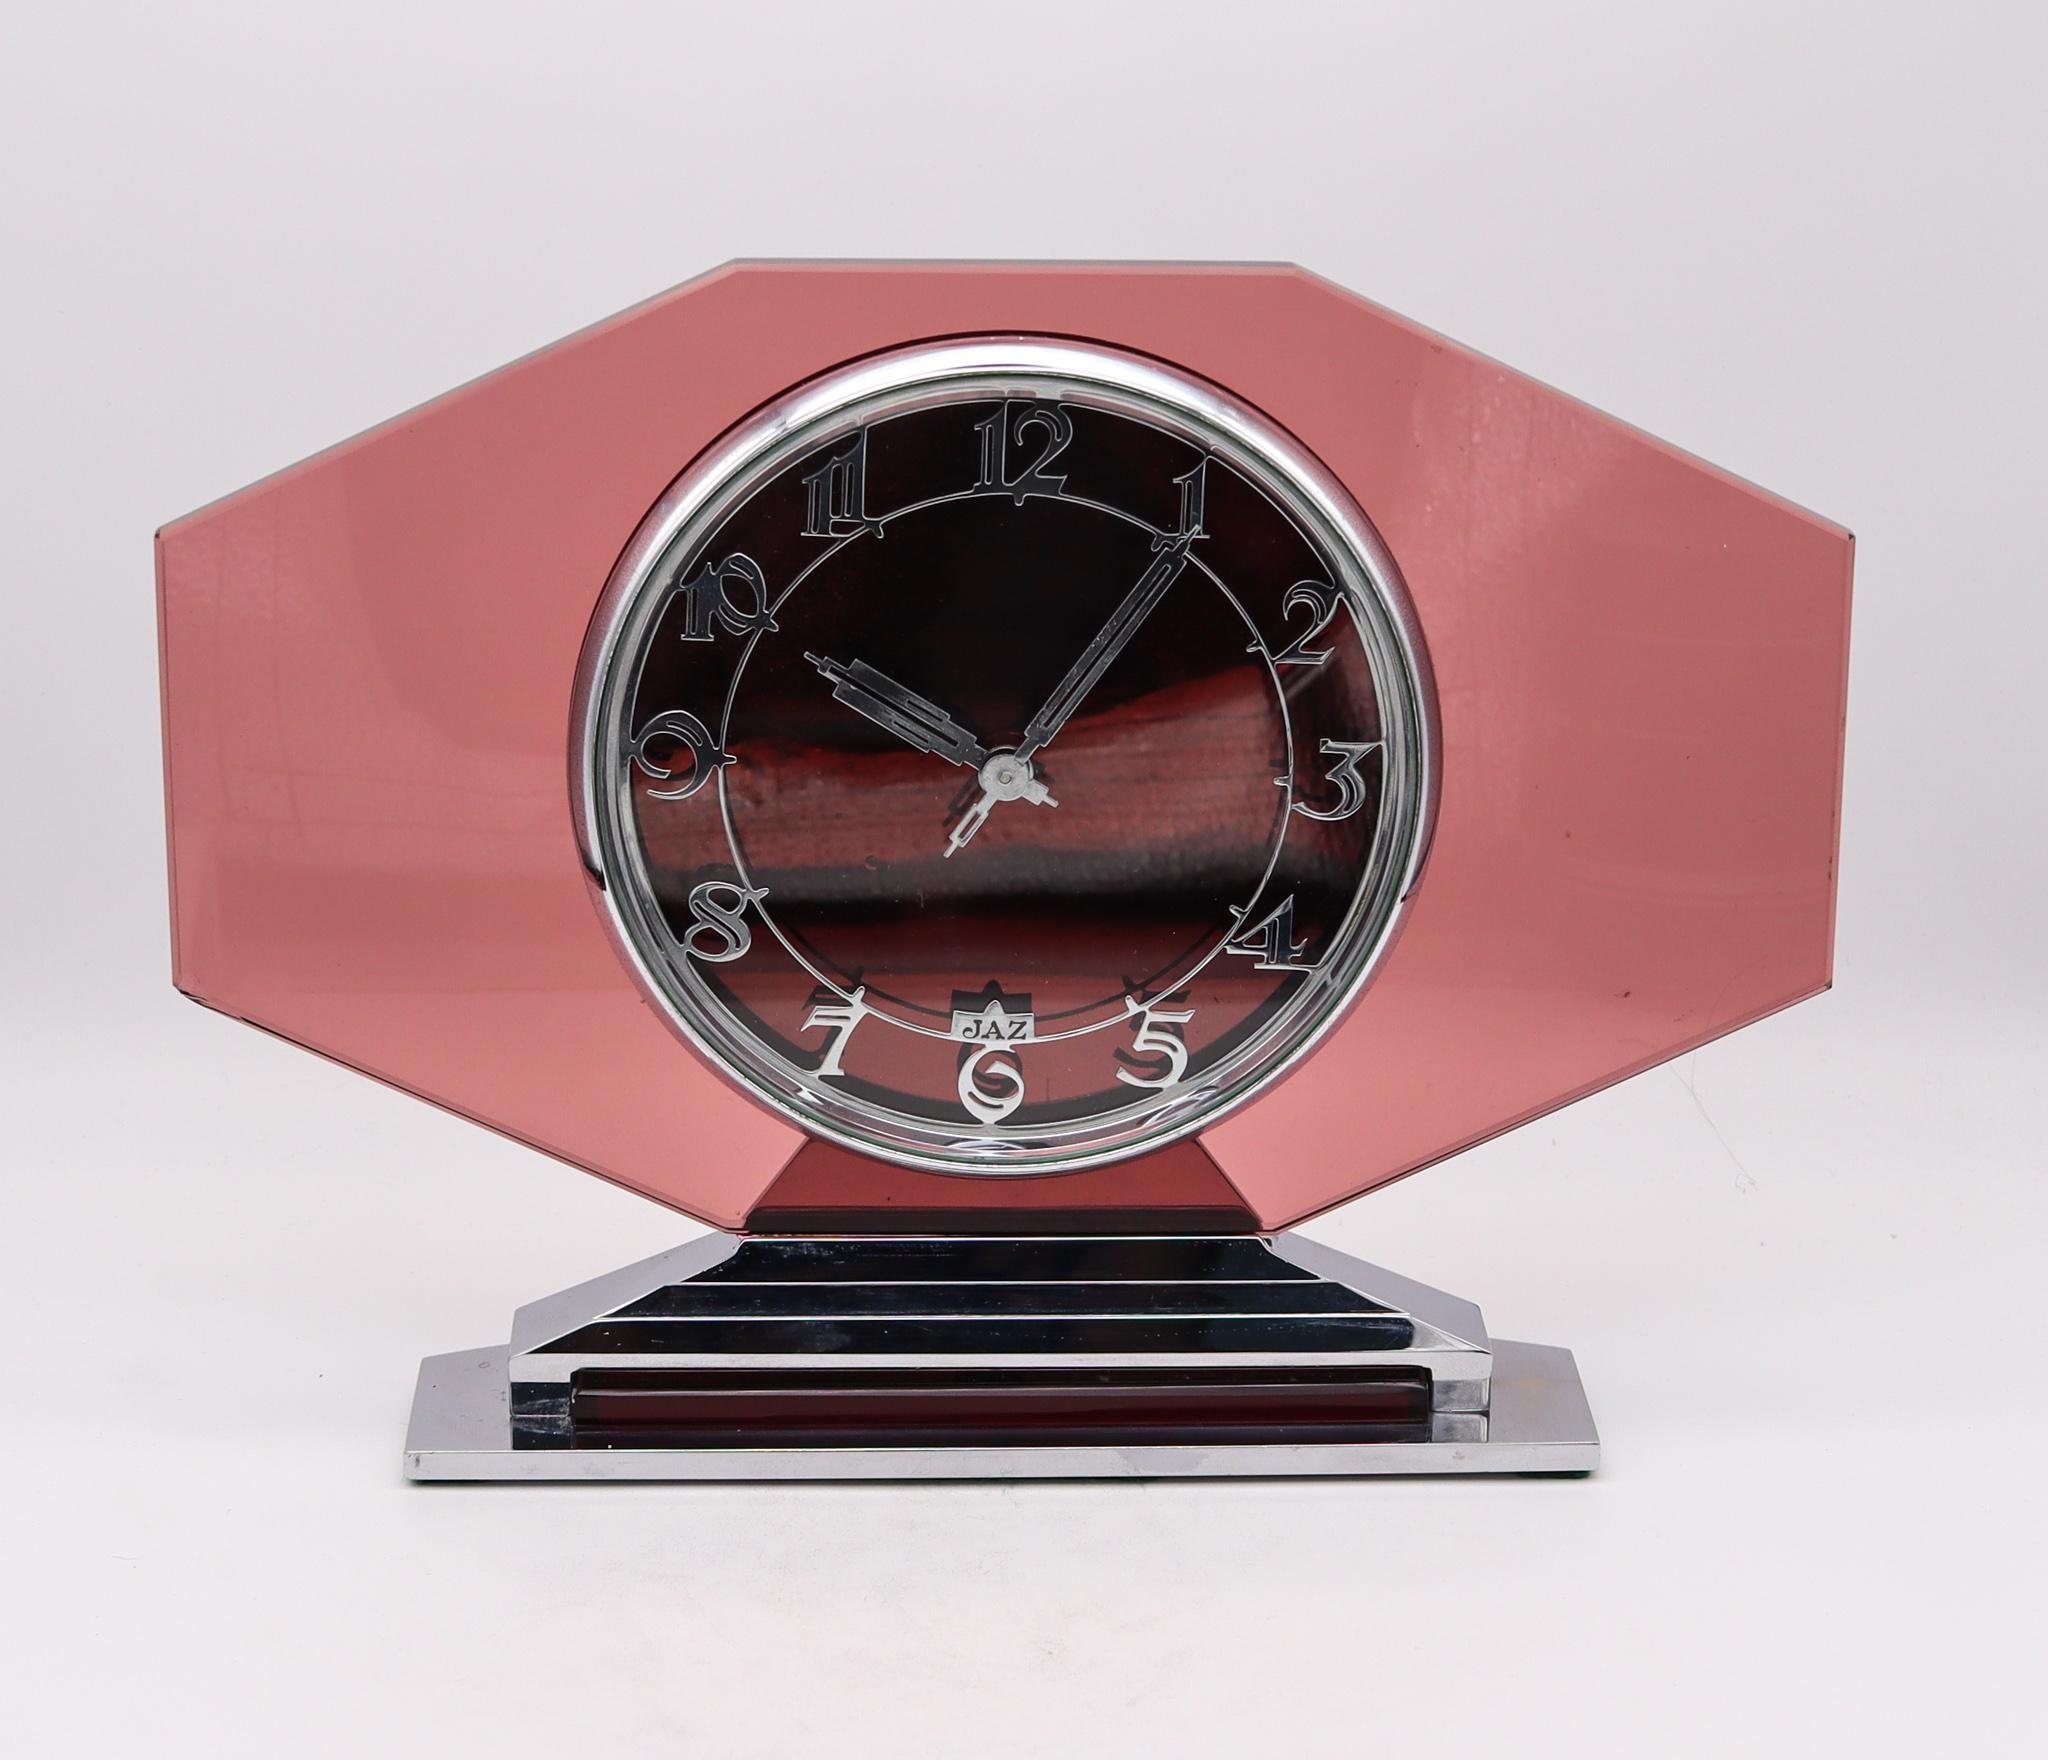 Une horloge de bureau conçue par JAZ Paris.

Une très belle horloge de bureau, créée à Paris en France par la société d'horlogerie JAZ pendant la période art déco, au début des années 1930. Cette pièce très décorative et très difficile à trouver a